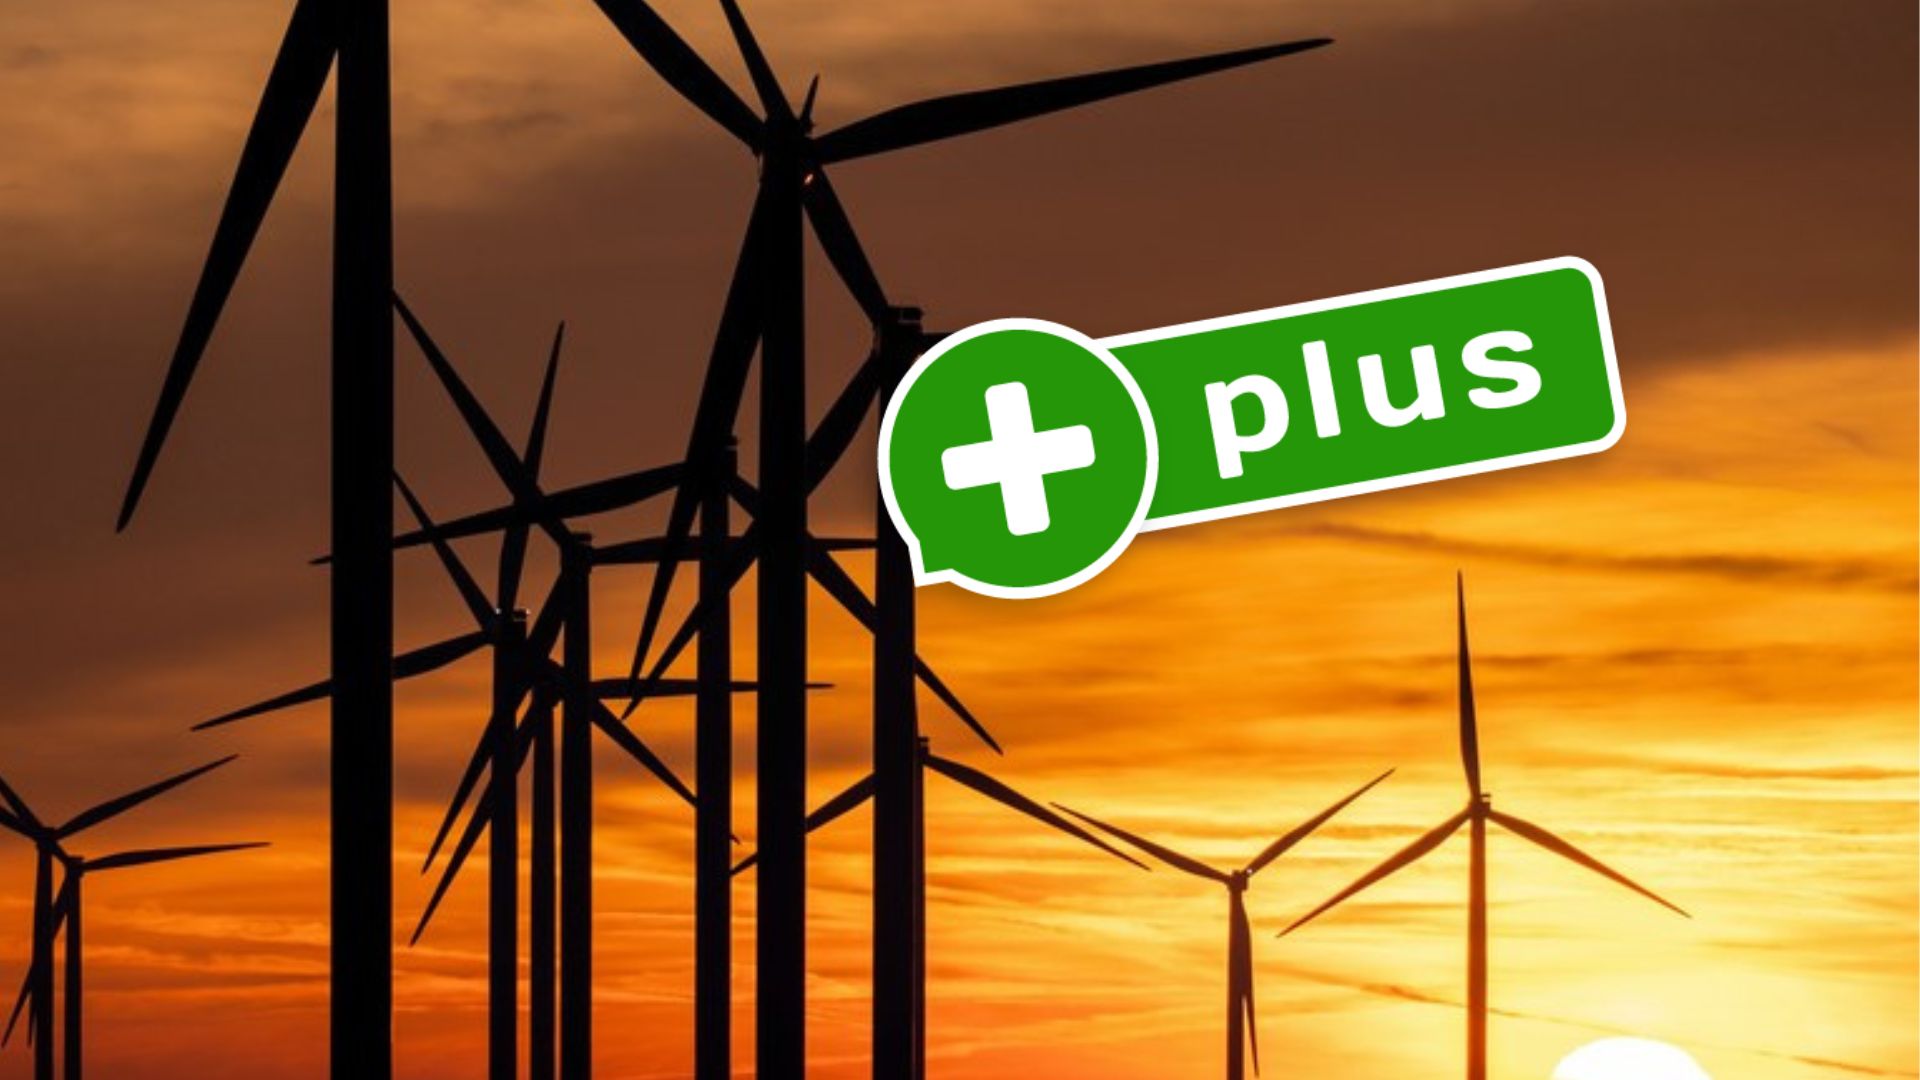 Bloomberg: Farmy wiatrowe oszukiwały, windowały ceny i spekulowały produkcją energii. A w Polsce? | BitHub.pl